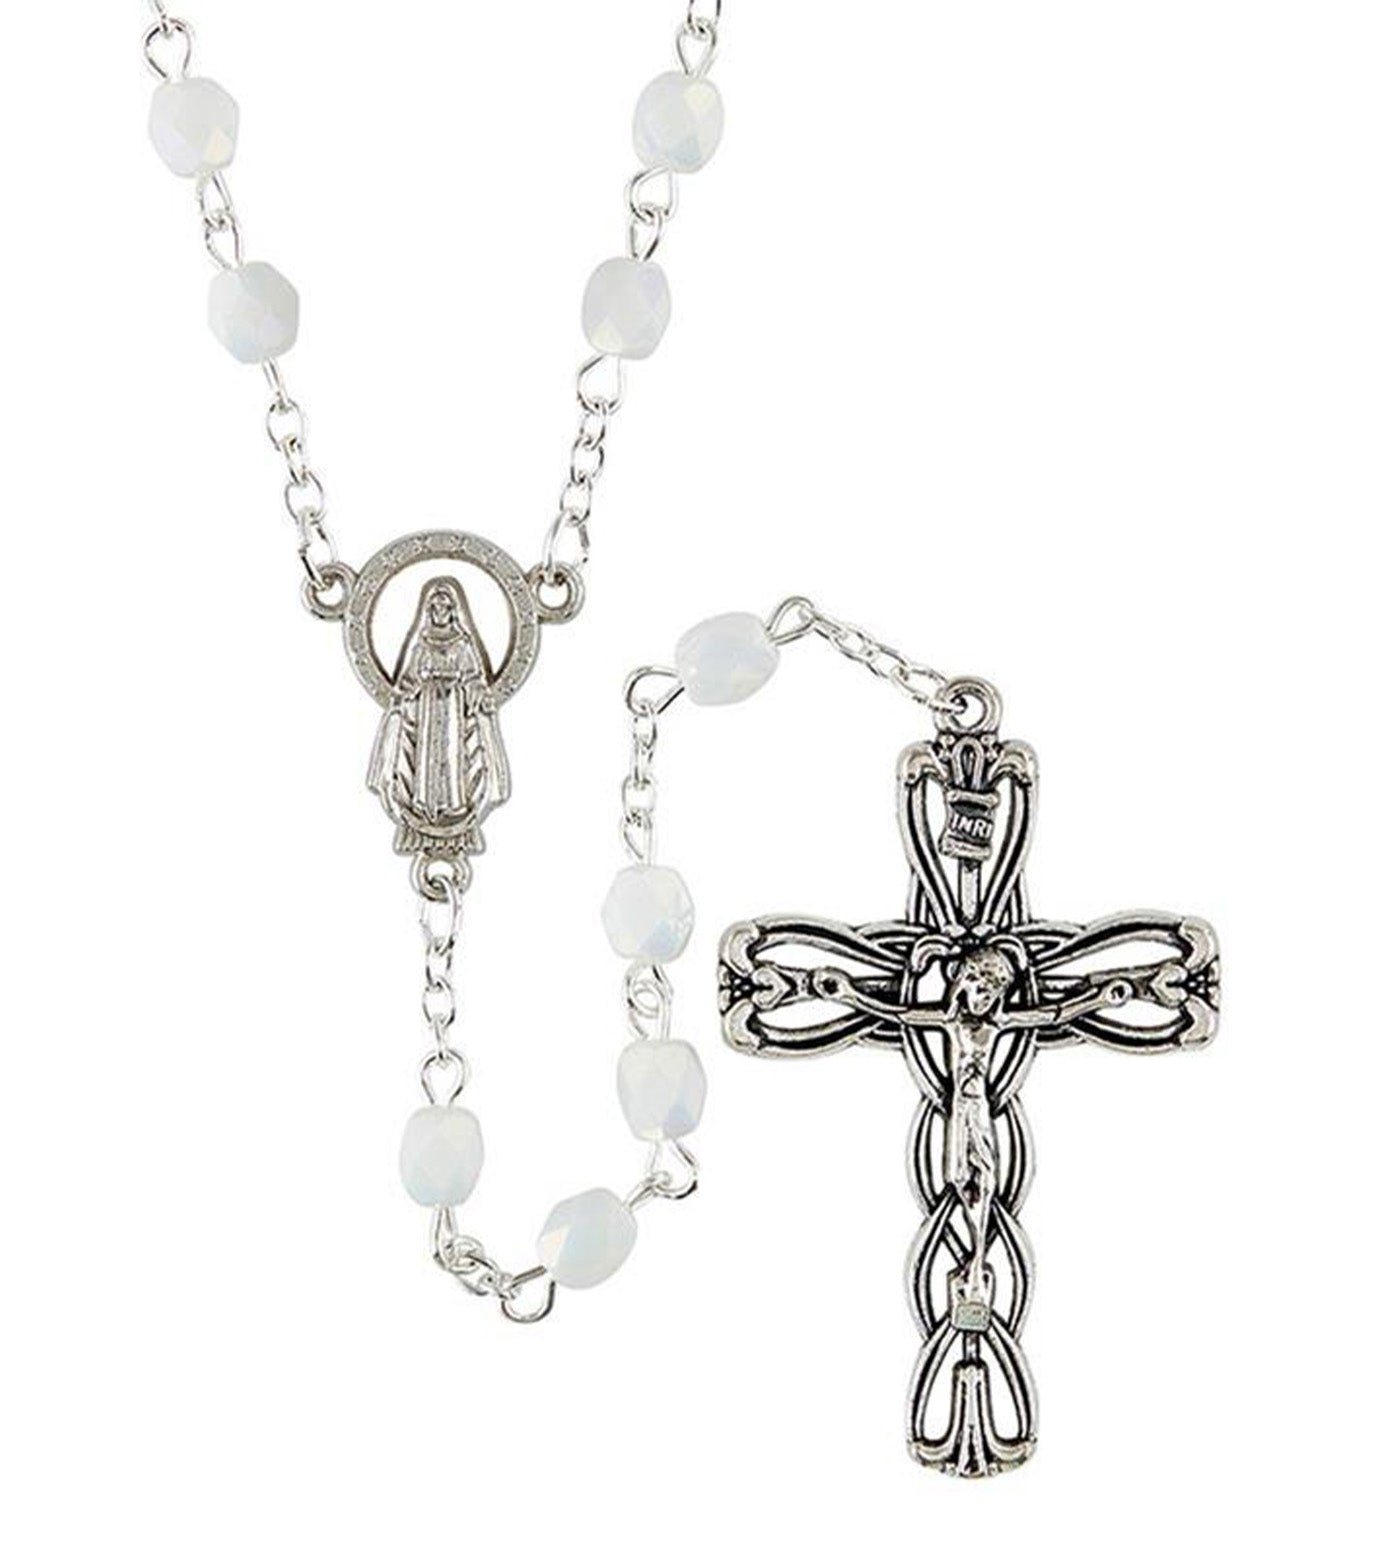 5 Decade Rosary